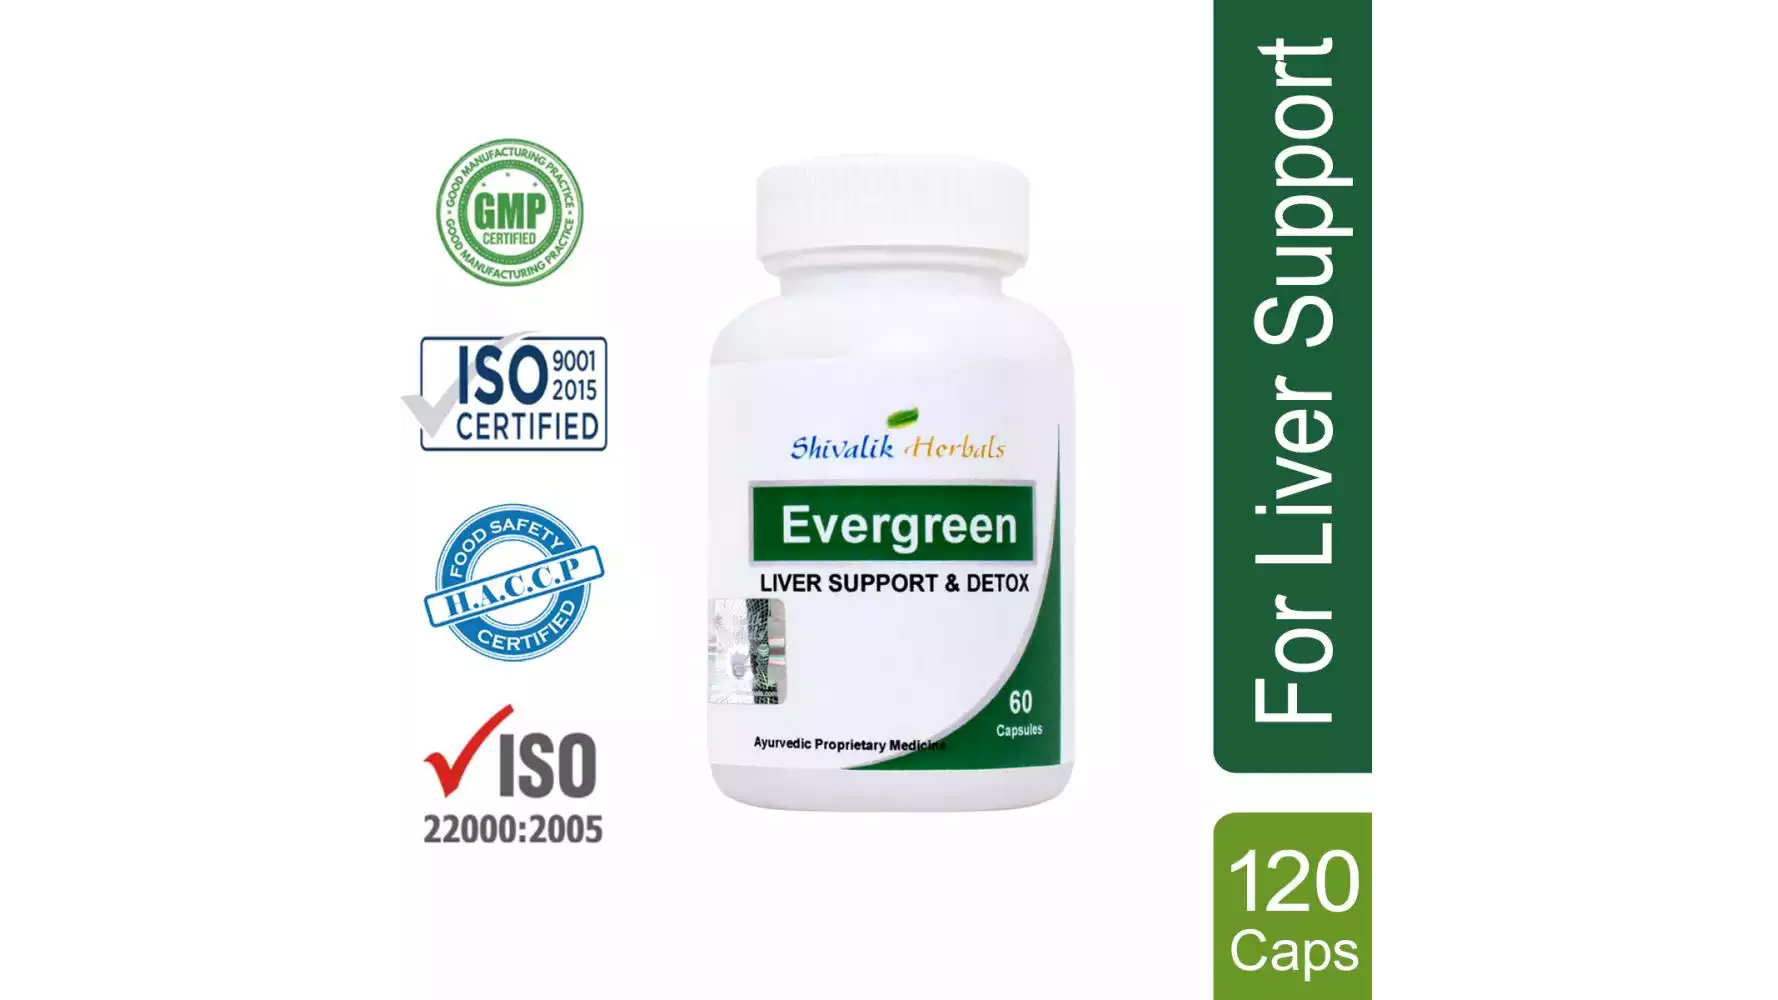 Shivalik Herbals EverGreen Capsule (60caps, Pack of 2)